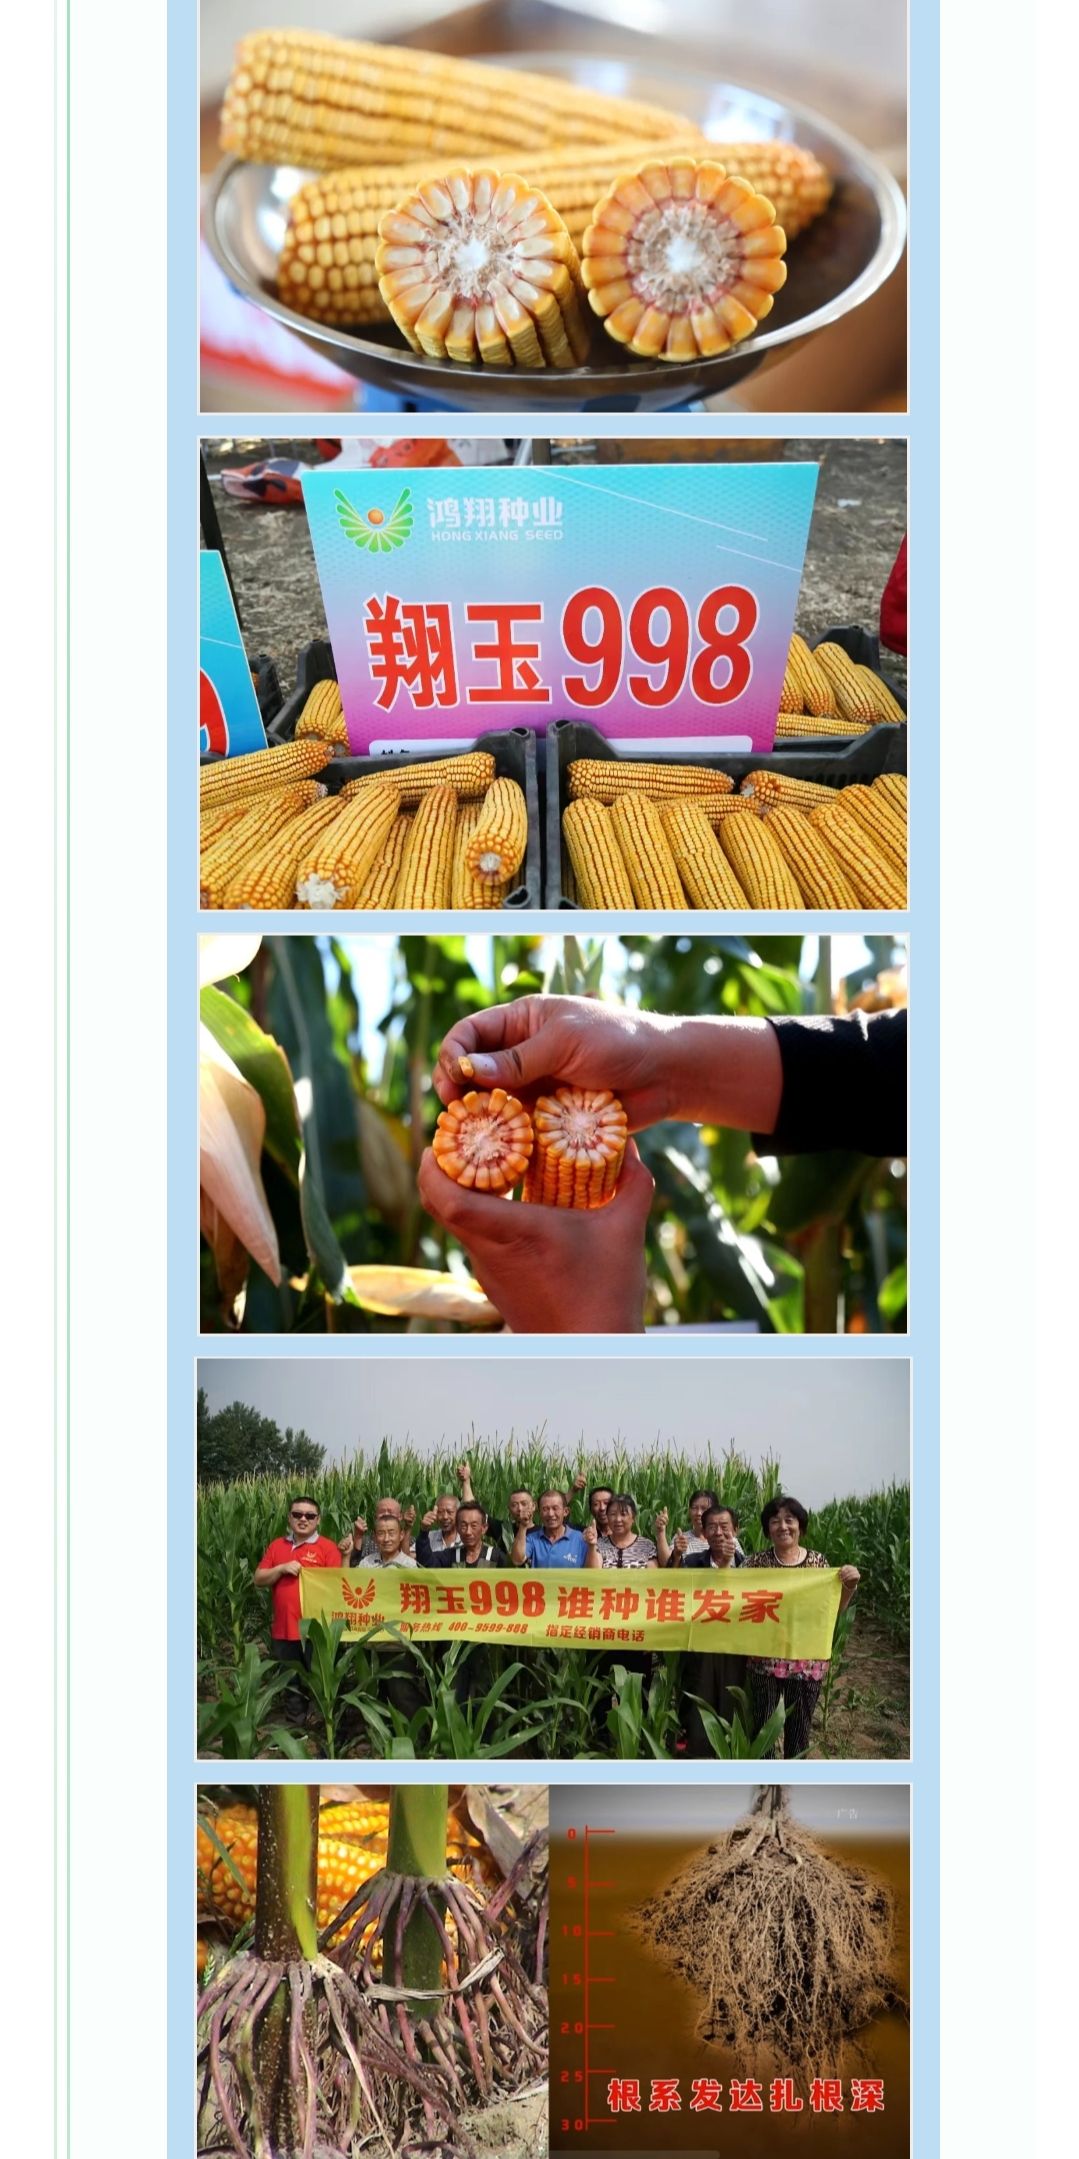 翔玉998玉米种子 轴细,粒深,产量高